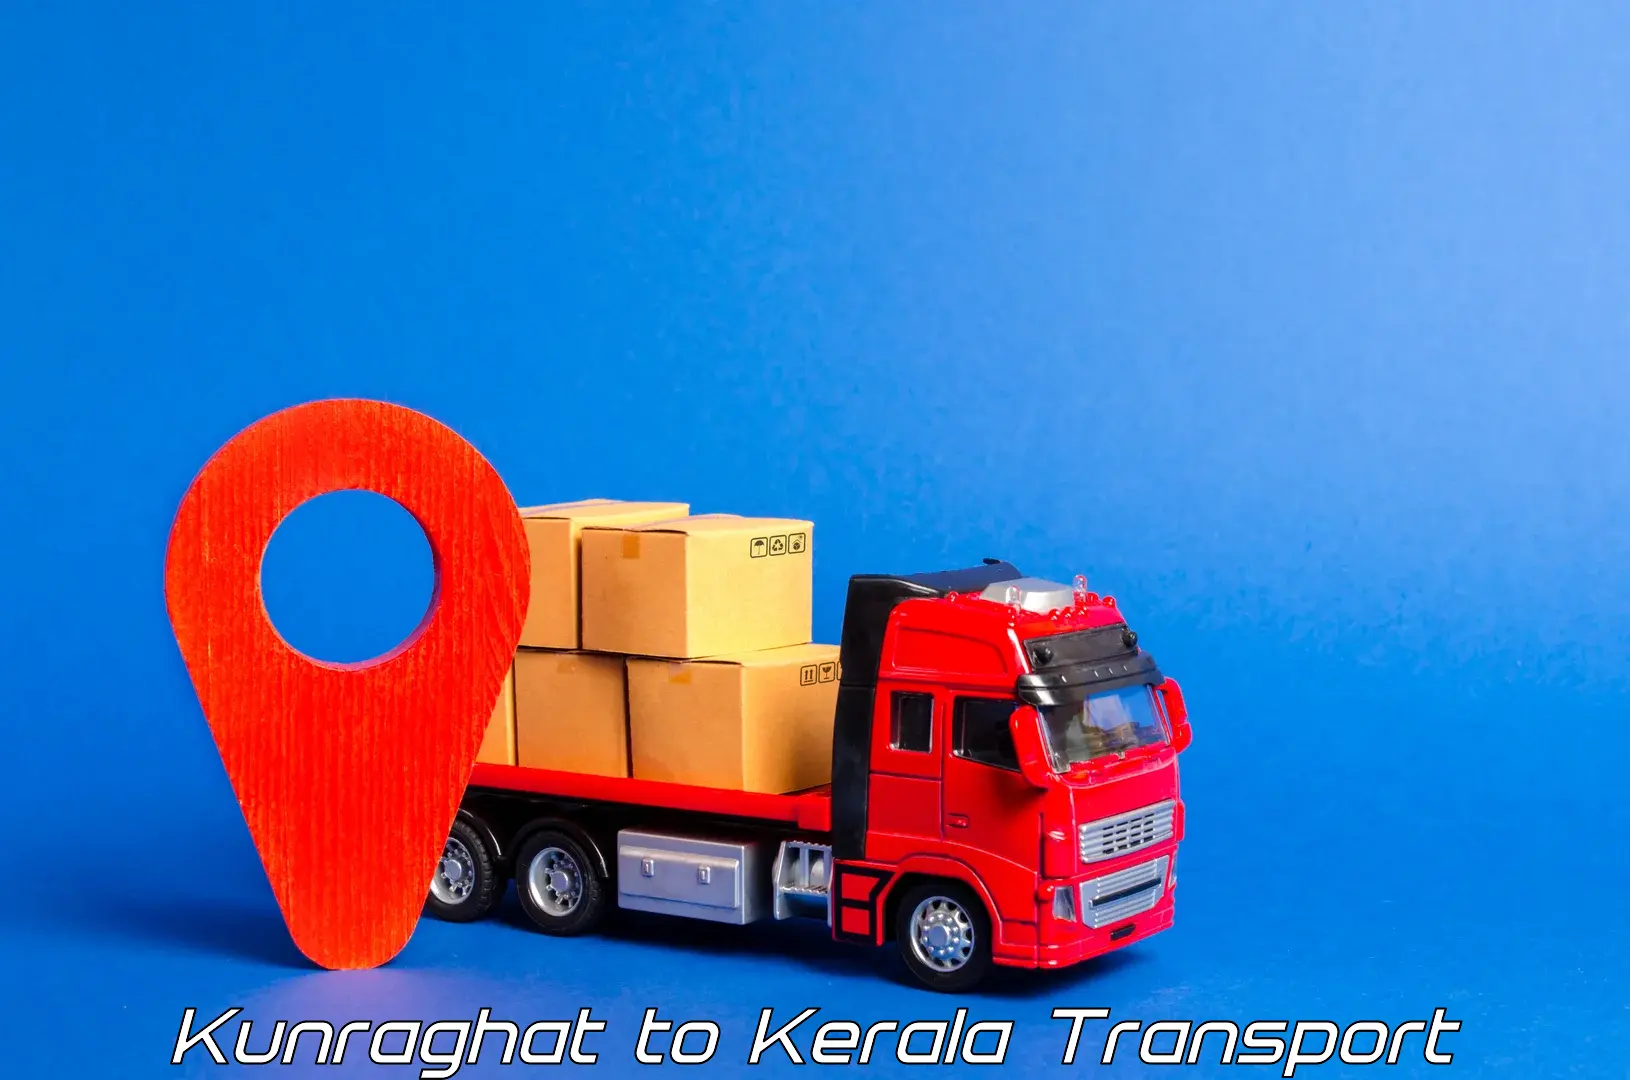 Intercity transport Kunraghat to IIIT Kottayam